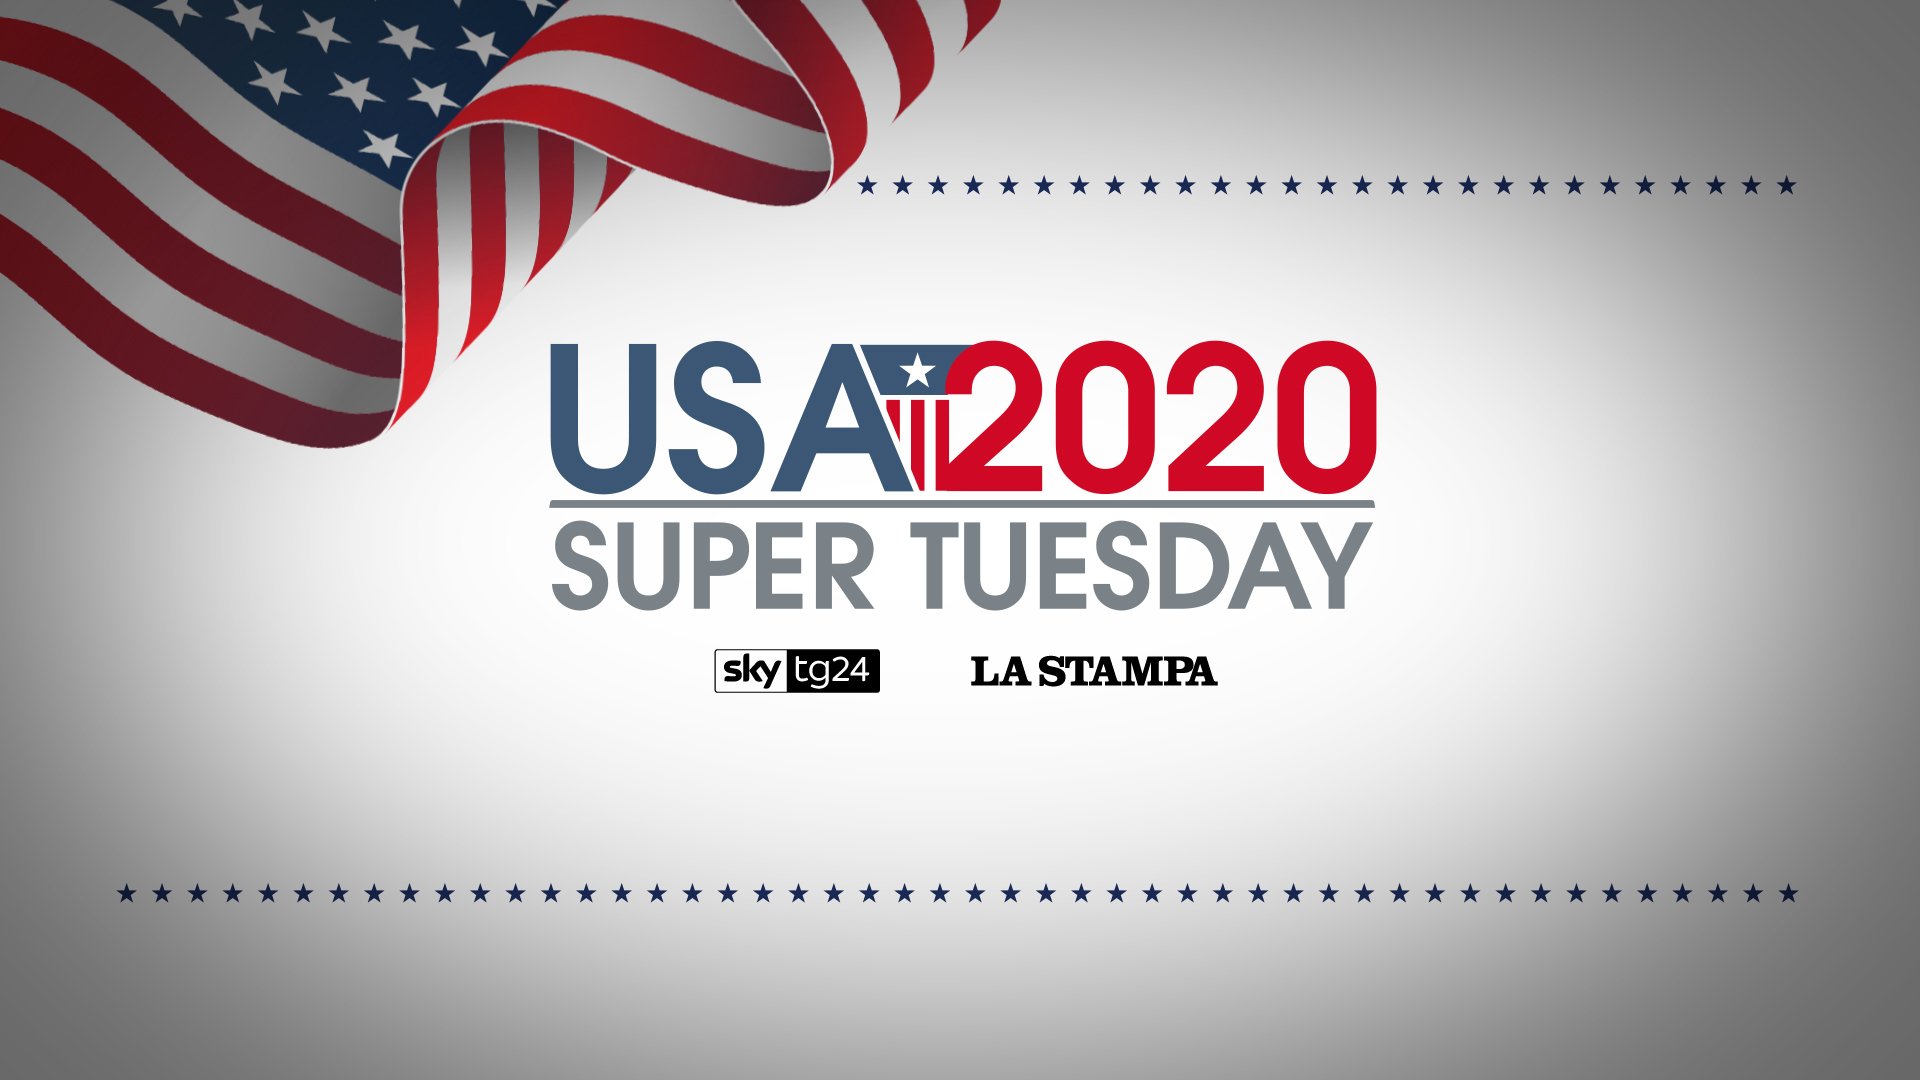 Sky TG24 e La Stampa per raccontare il Super Tuesday USA 2020 